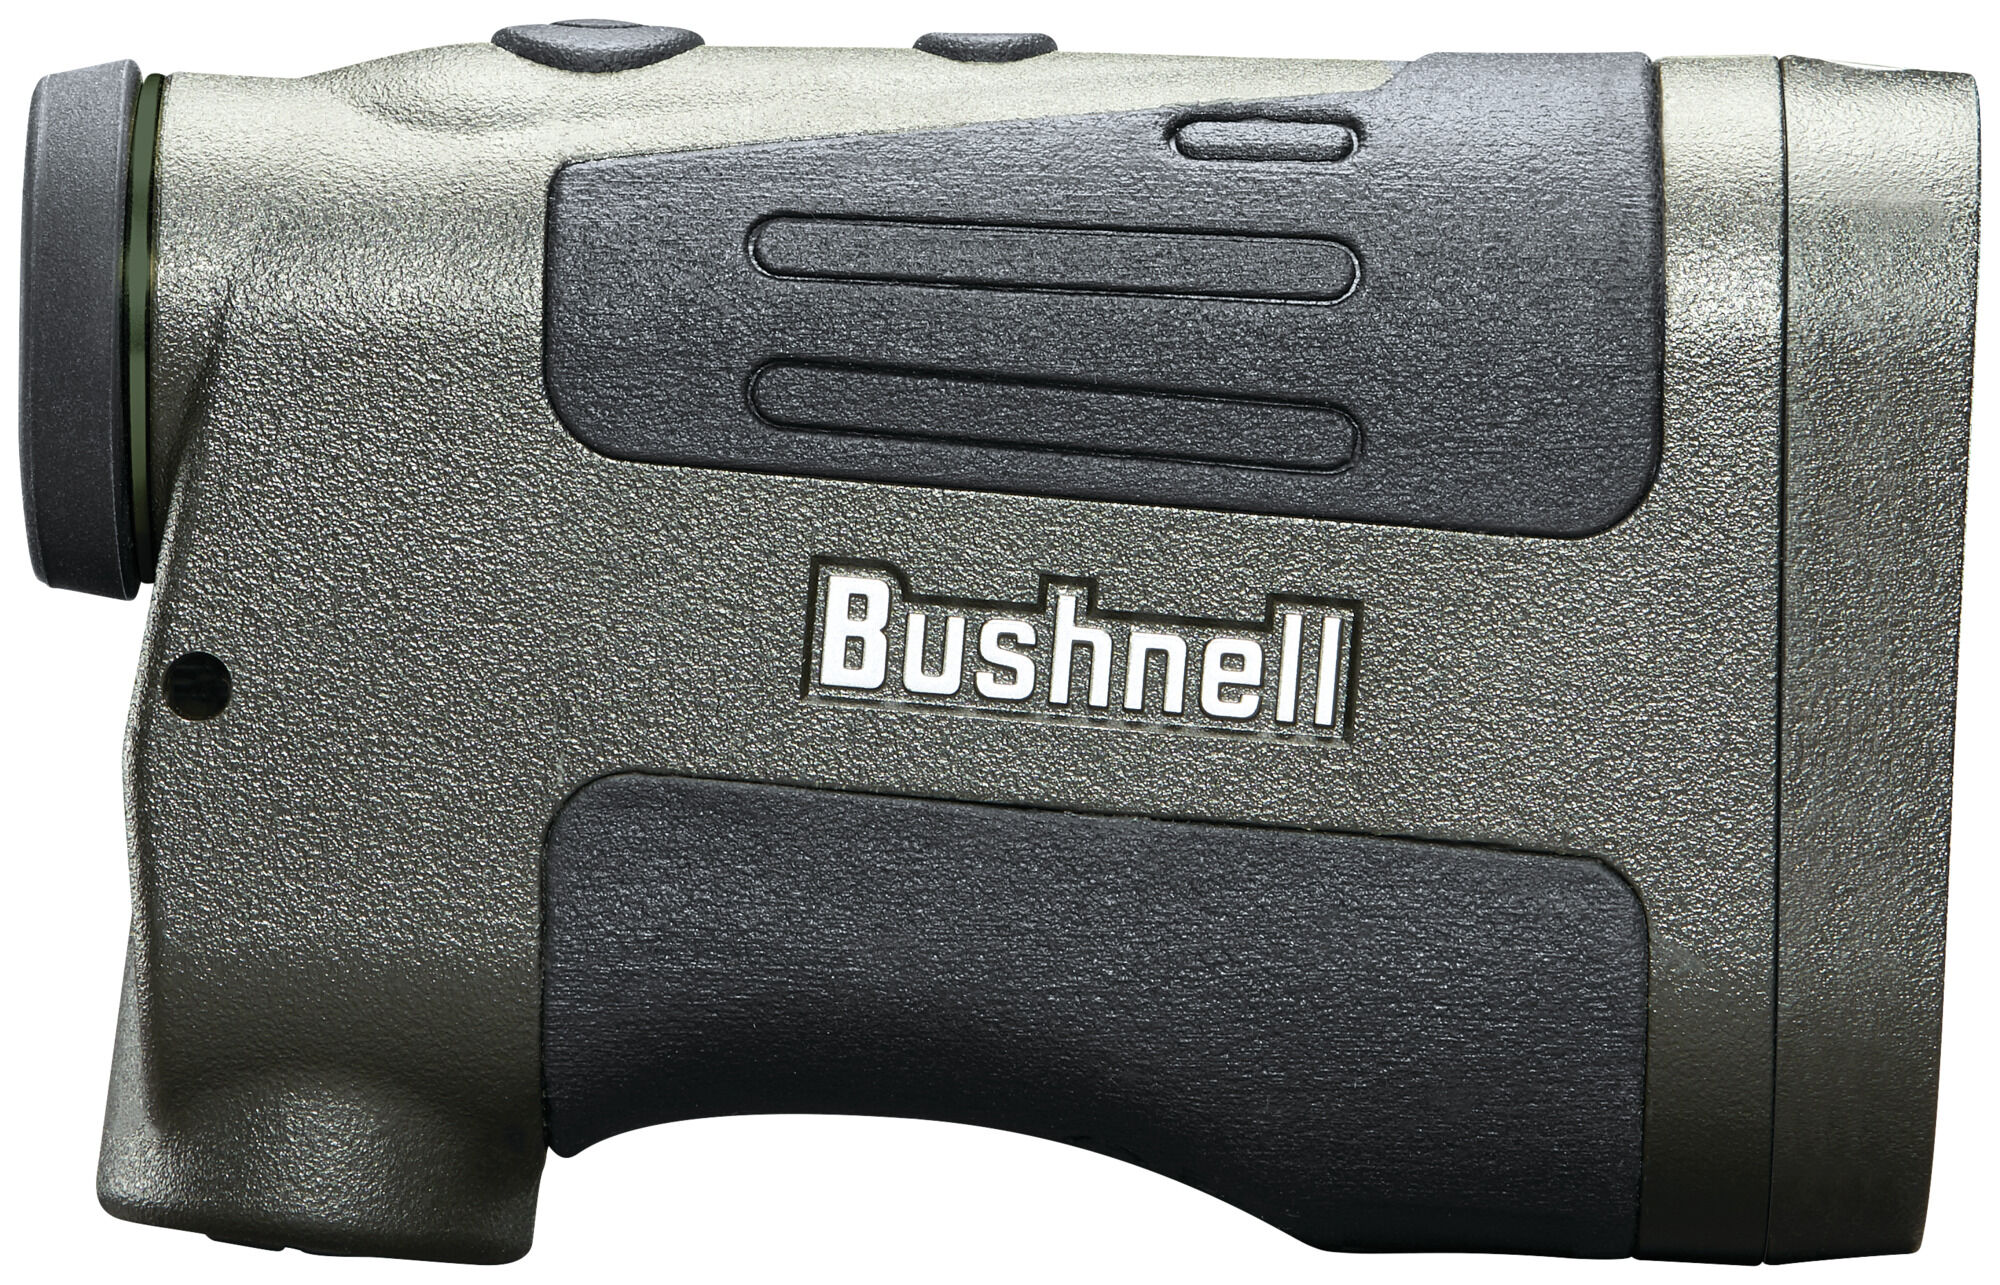 Prime 1300 Laser, Bow Hunting Rangefinder | Bushnell